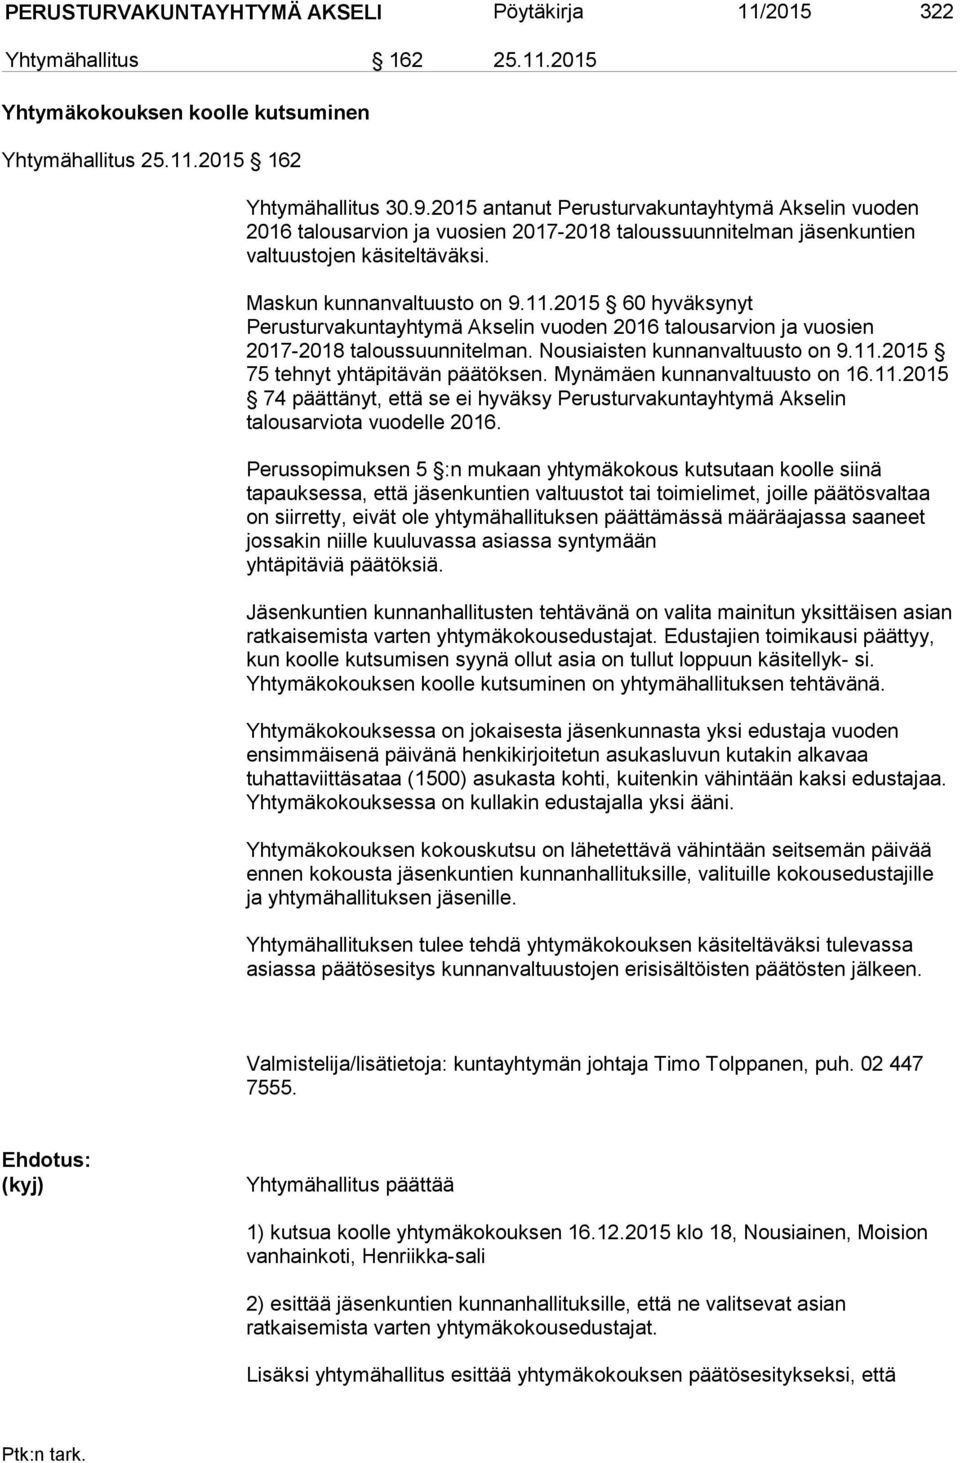 2015 60 hyväksynyt Perusturvakuntayhtymä Akselin vuoden 2016 talousarvion ja vuosien 2017-2018 taloussuunnitelman. Nousiaisten kunnanvaltuusto on 9.11.2015 75 tehnyt yhtäpitävän päätöksen.